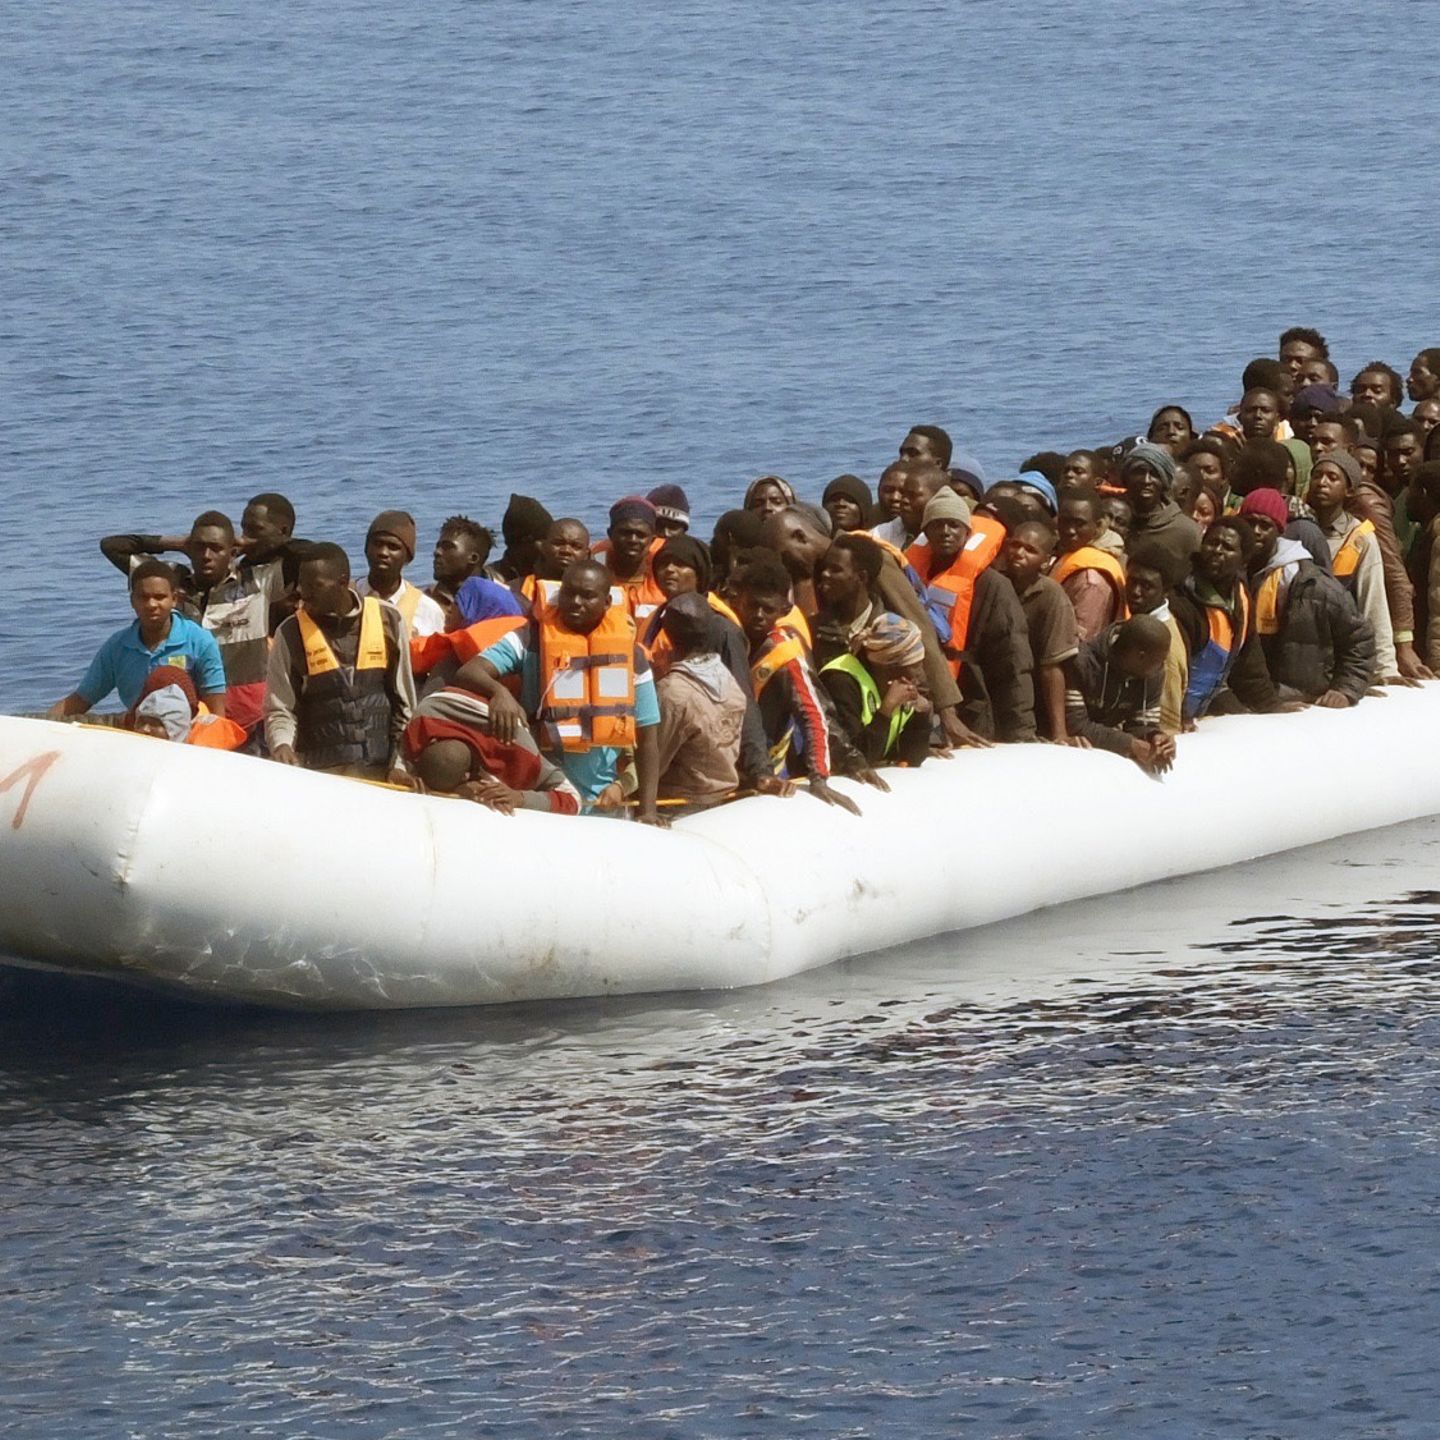 schlauchboot-libyen-eu-verbot-fluechtlinge.jpg